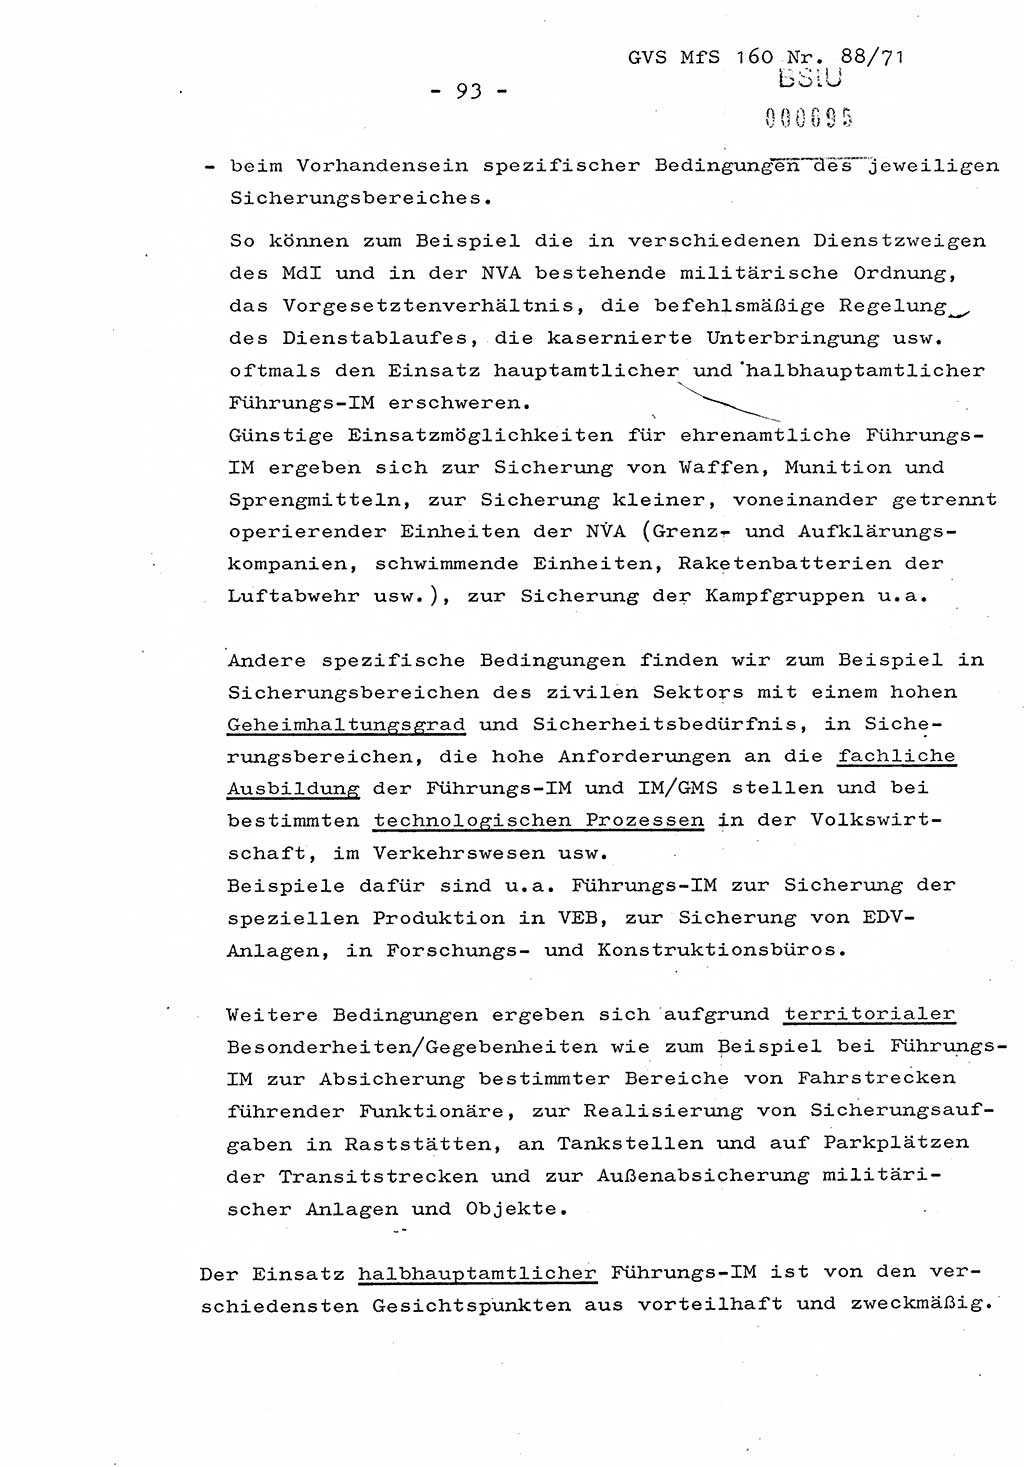 Dissertation Oberstleutnant Josef Schwarz (BV Schwerin), Major Fritz Amm (JHS), Hauptmann Peter Gräßler (JHS), Ministerium für Staatssicherheit (MfS) [Deutsche Demokratische Republik (DDR)], Juristische Hochschule (JHS), Geheime Verschlußsache (GVS) 160-88/71, Potsdam 1972, Seite 93 (Diss. MfS DDR JHS GVS 160-88/71 1972, S. 93)